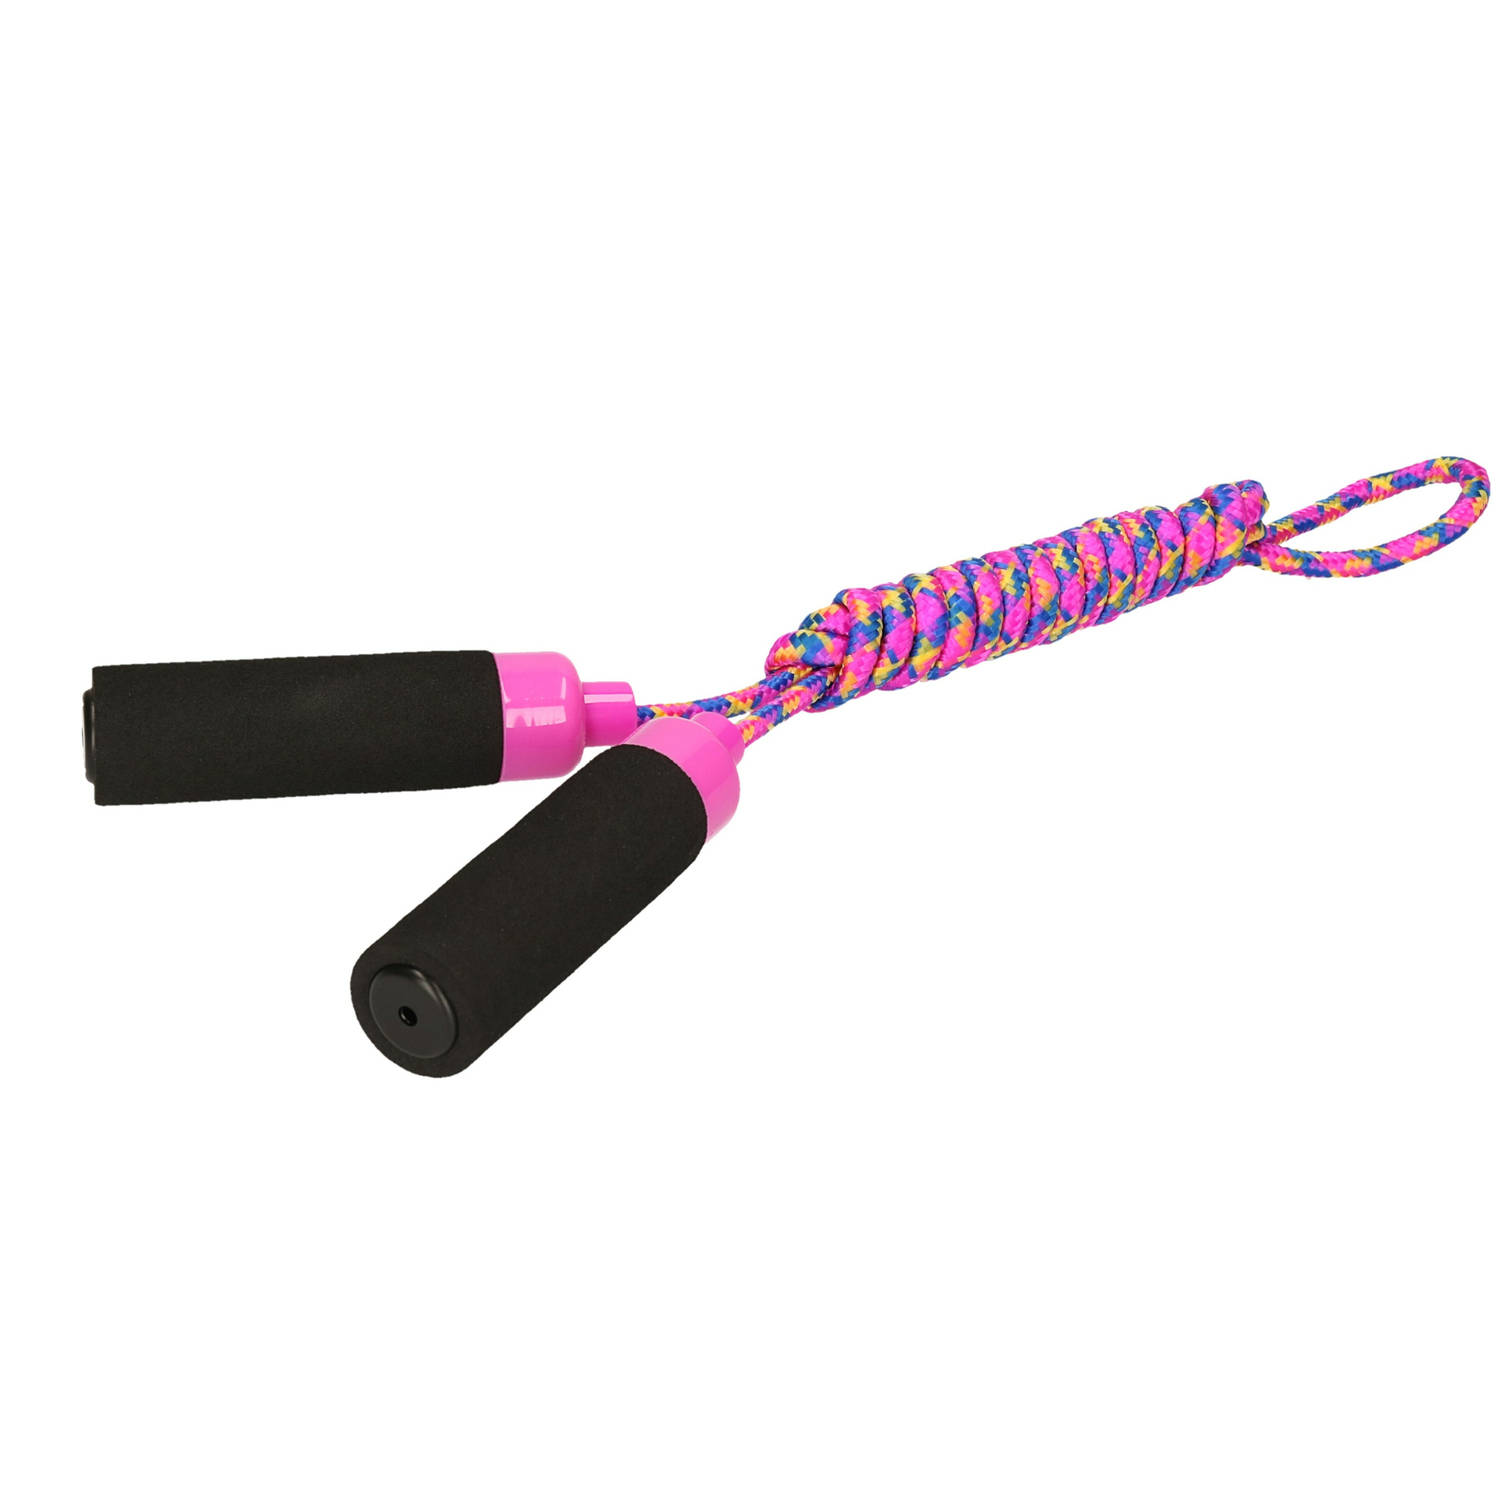 Kids Fun Springtouw speelgoed met Foam handvat - fuchsia roze touw - 210 cm - buitenspeelgoed - Springtouwen